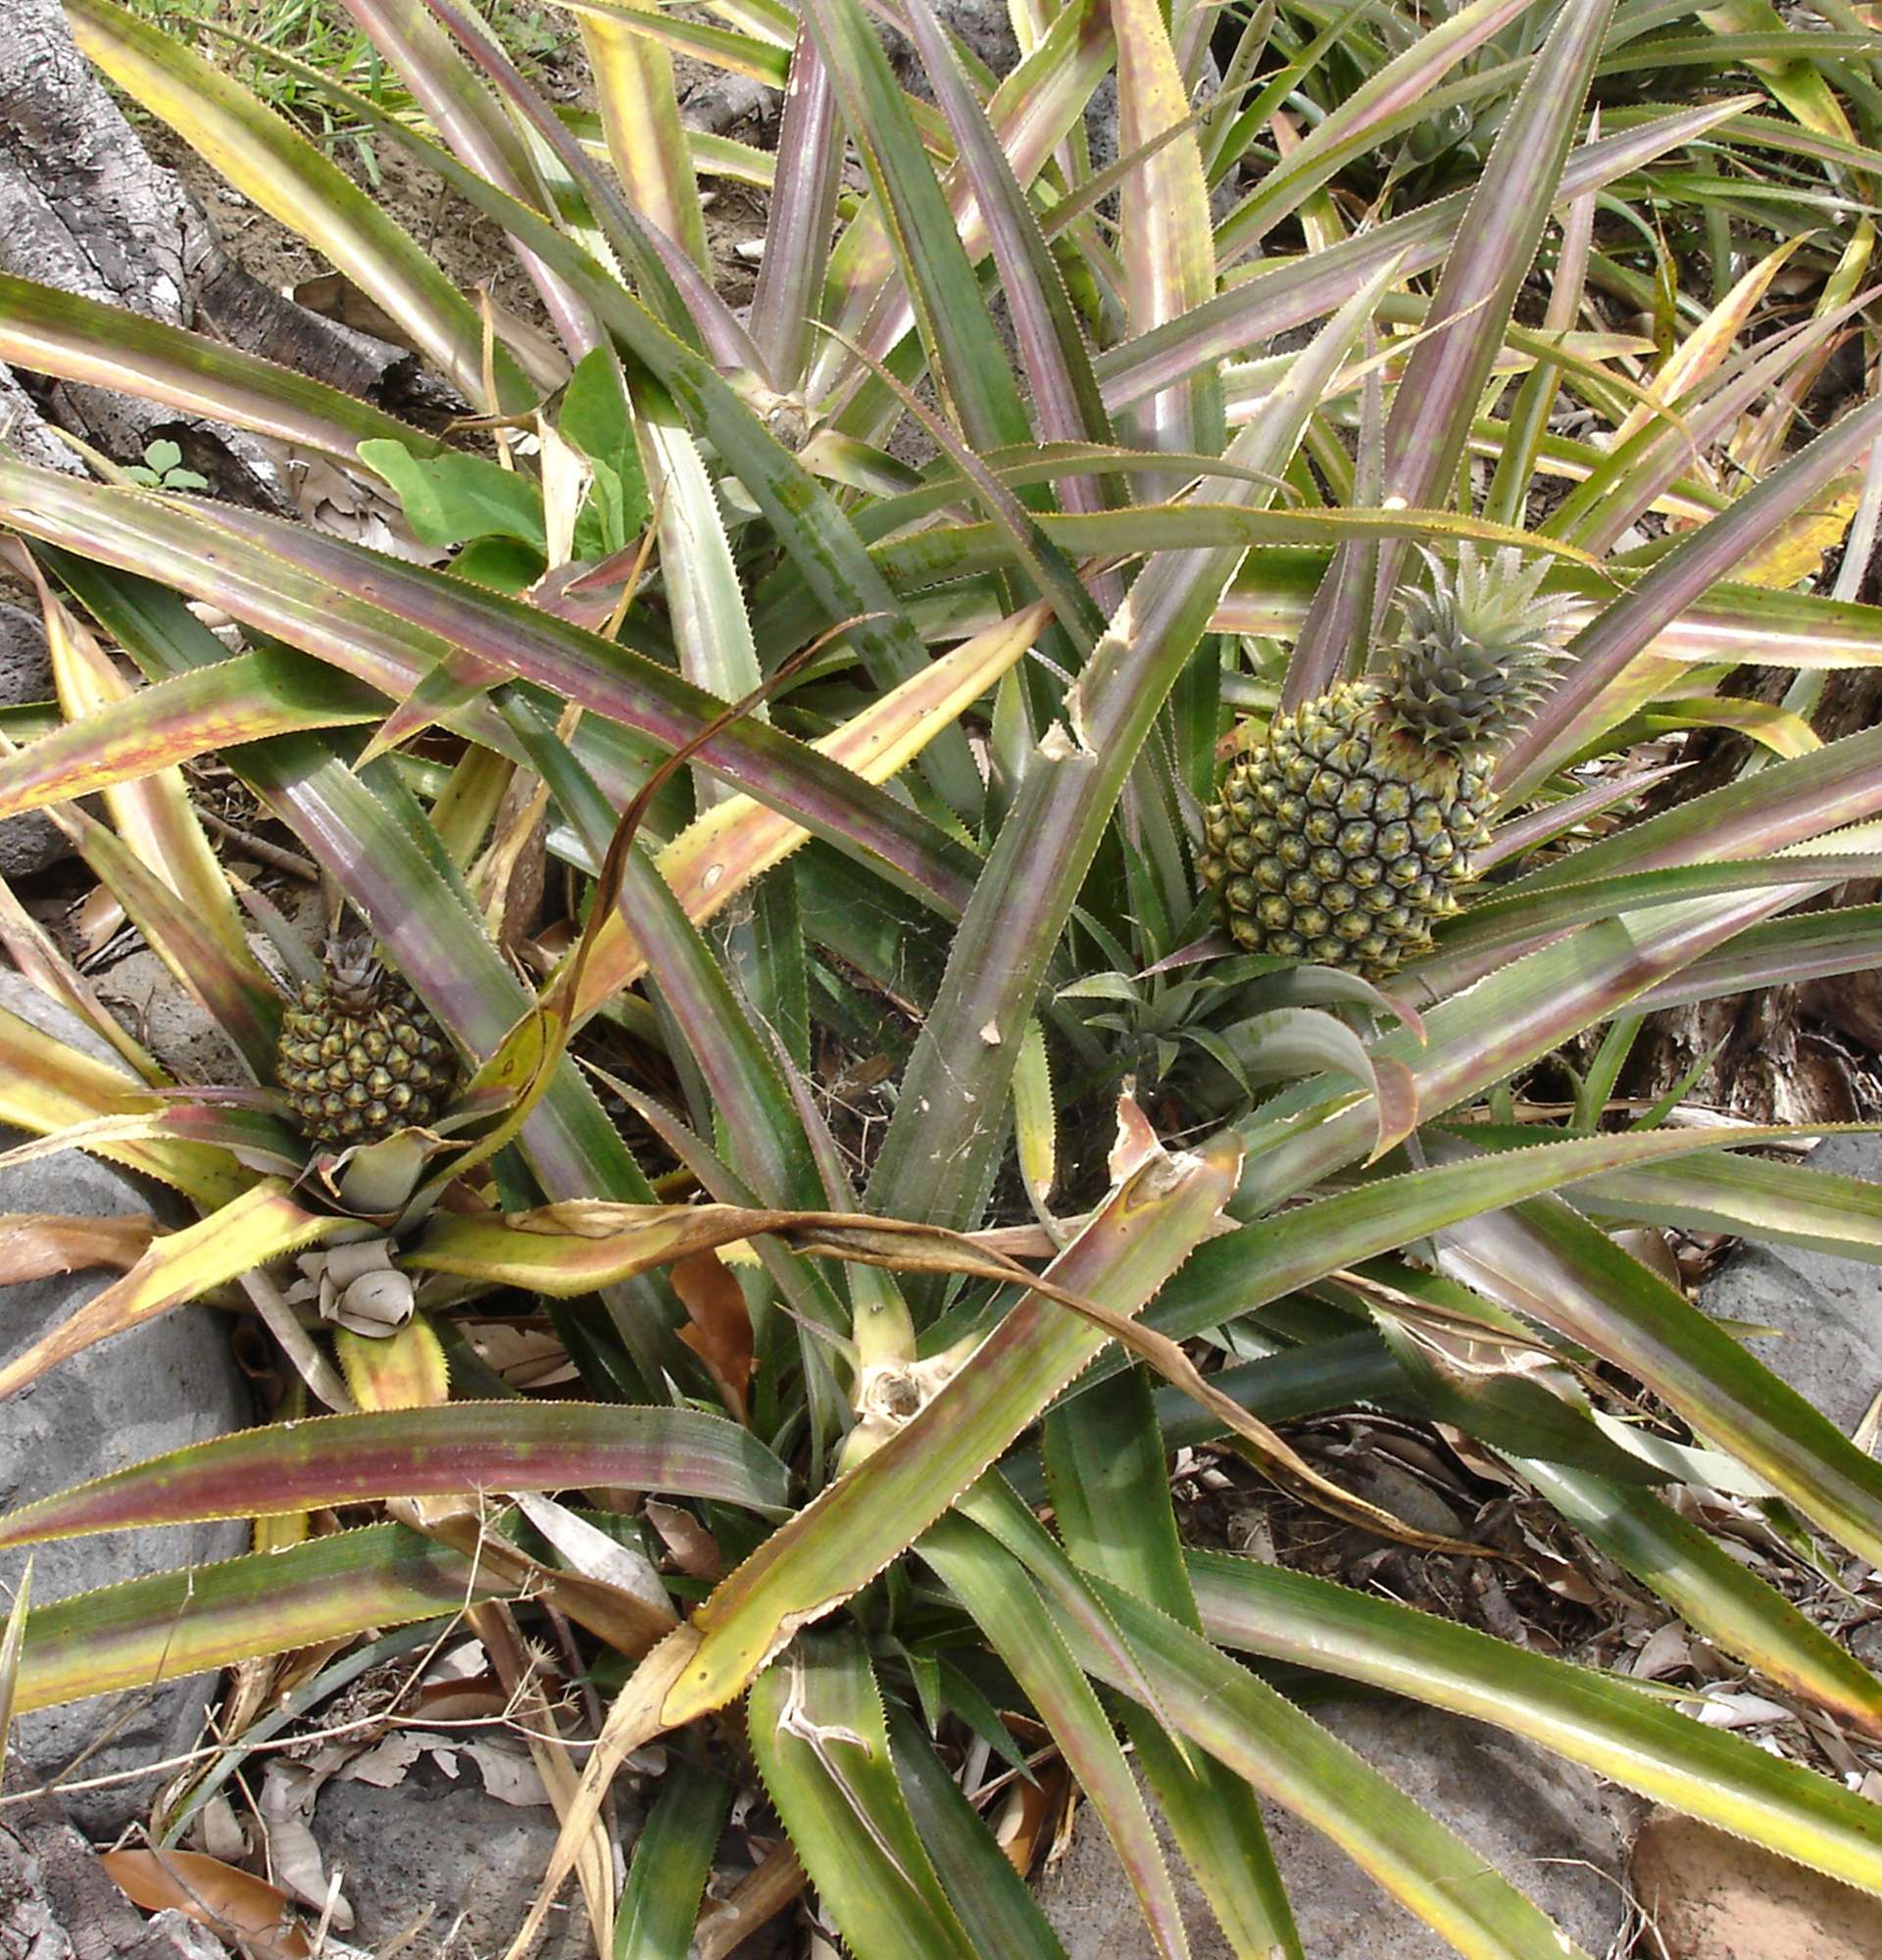  трава ананас фото - ананас в естественной среде